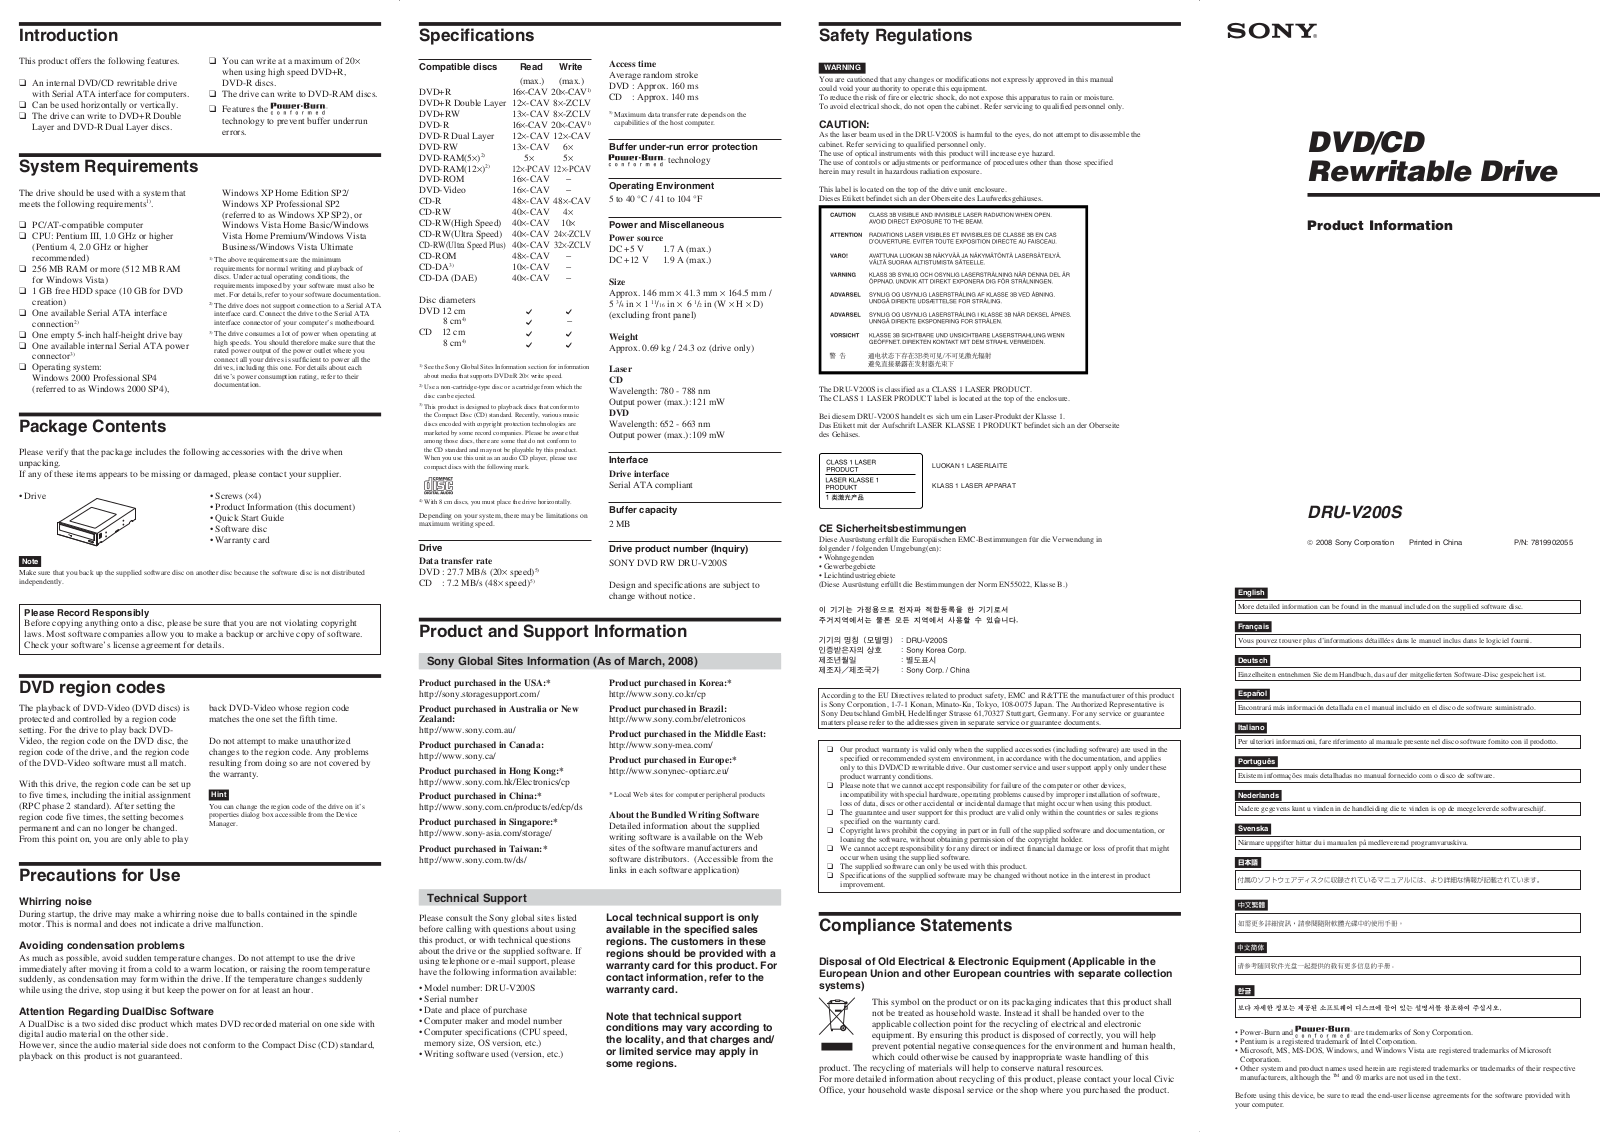 SONY DRU-V200S User Manual